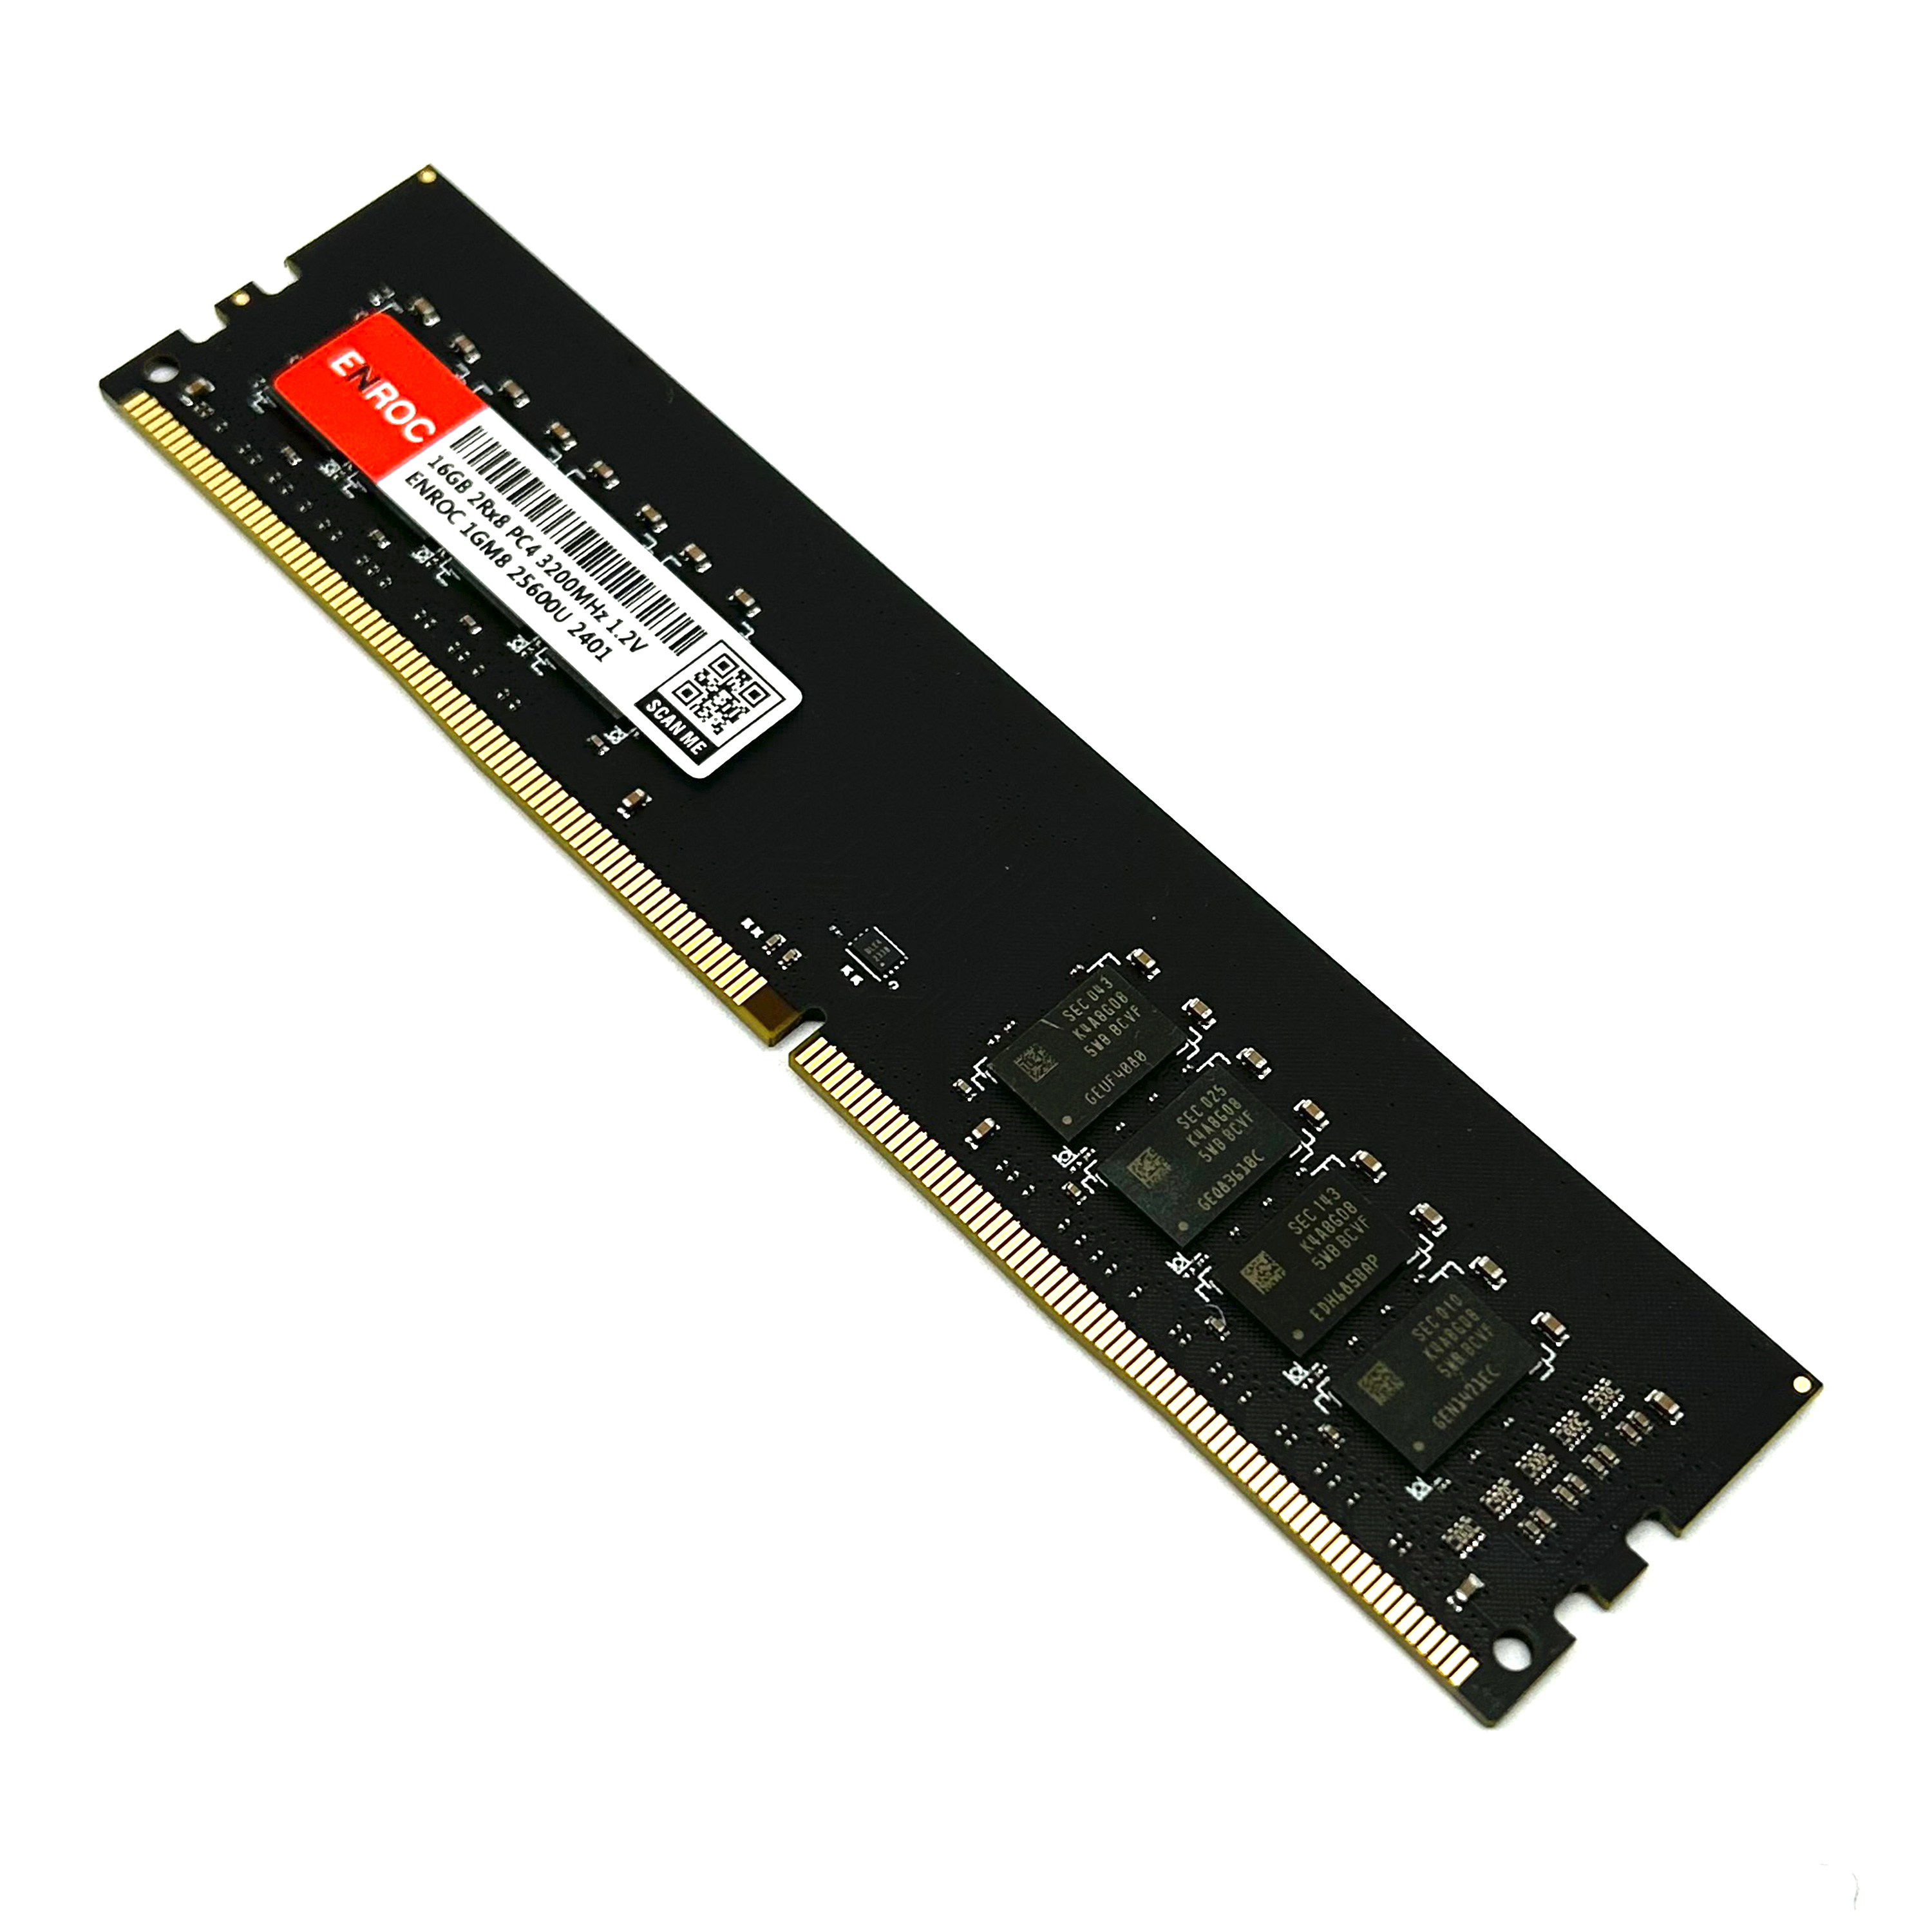 Desktop ERC880 RAM DDR4 16GB Memory 16 DDR4 3200 GB ENROC MHz UDIMM